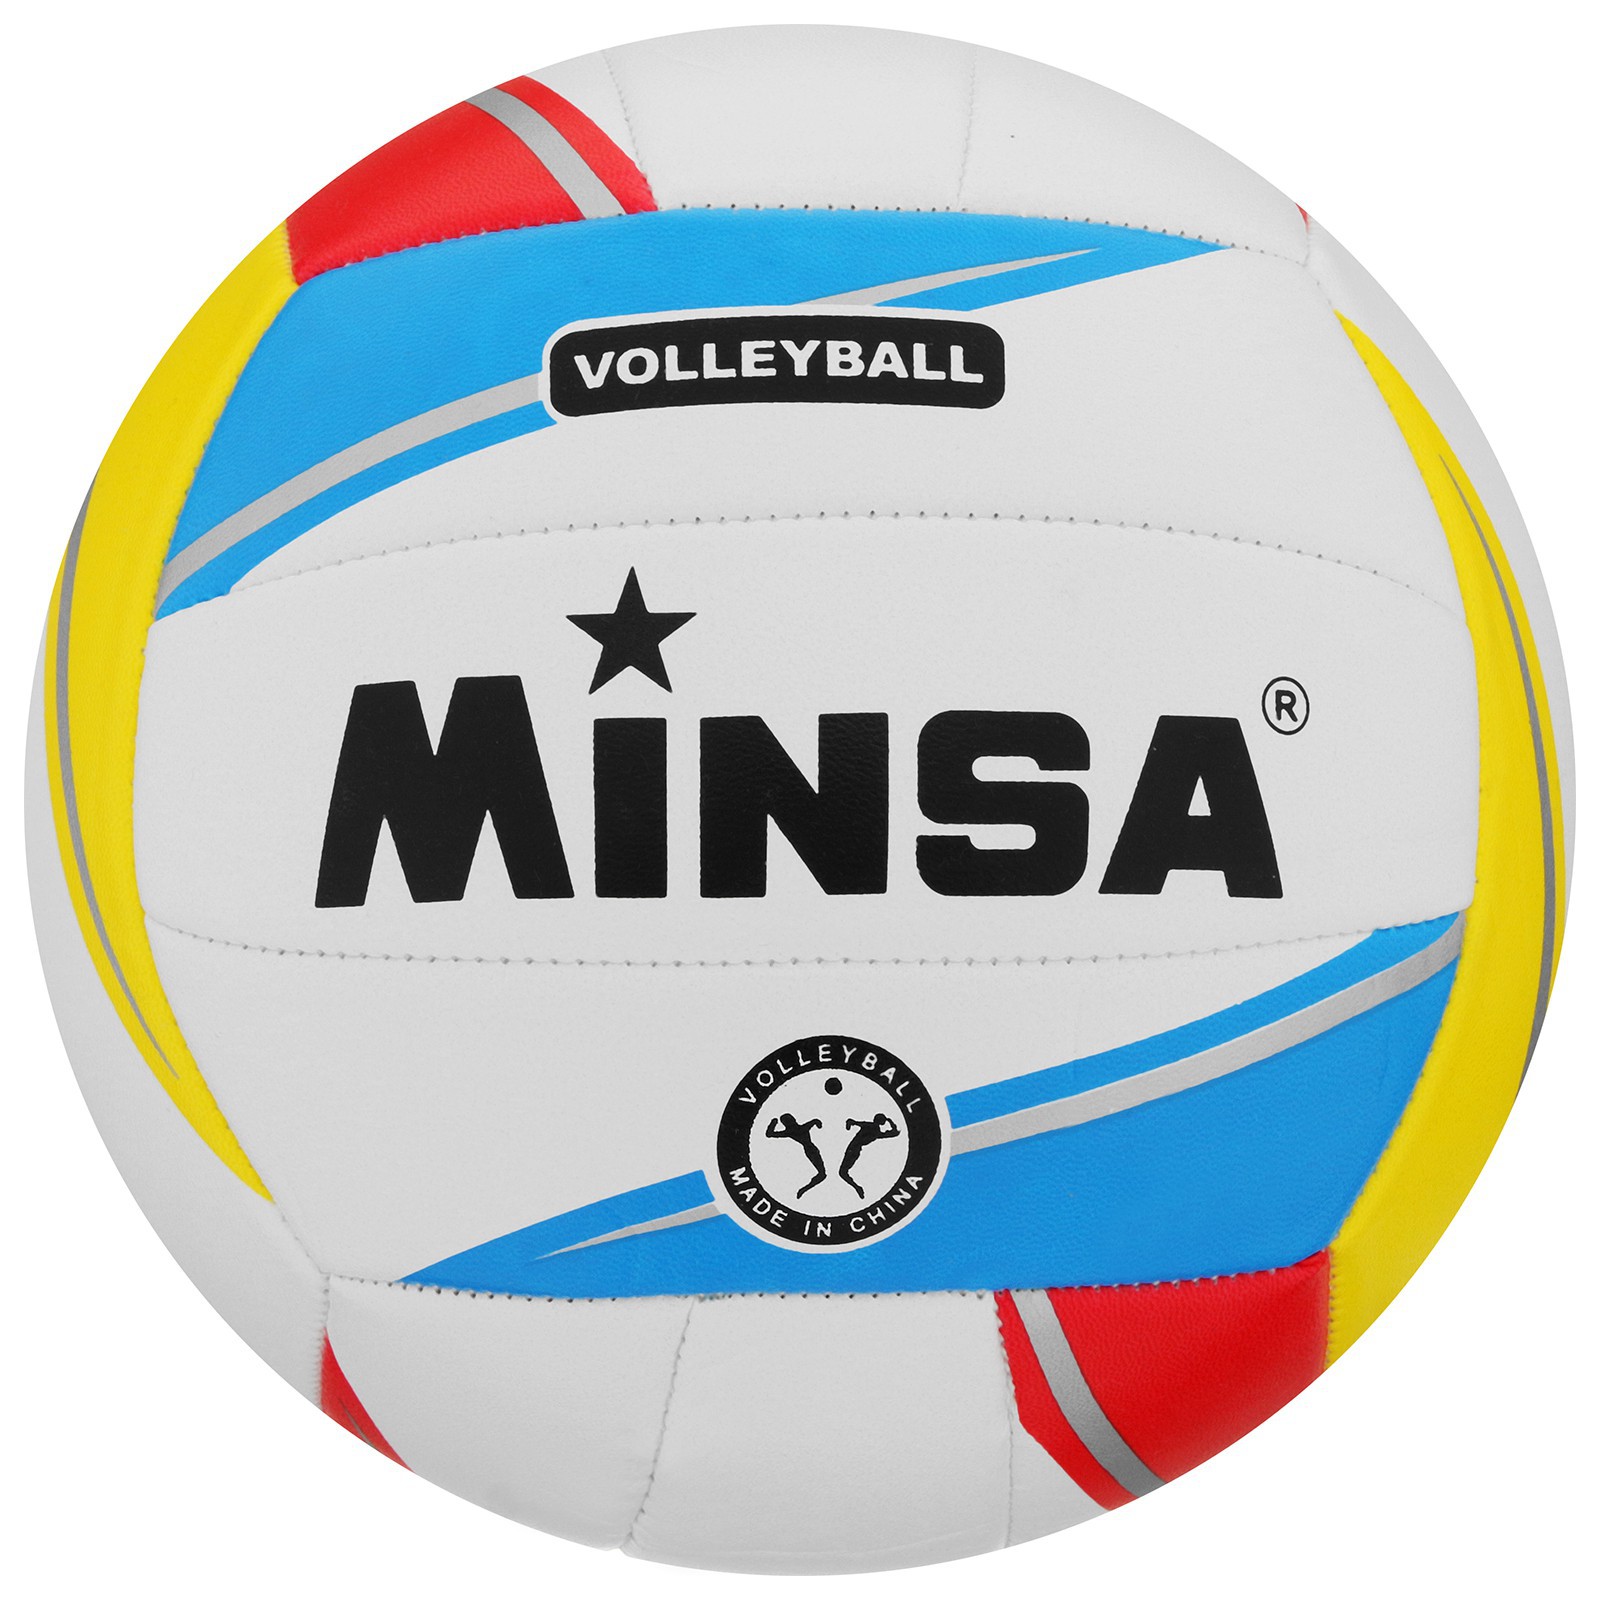 Мяч MINSA волейбольный ПВХ. машинная сшивка. 18 панелей. размер 5. 250 г - фото 1